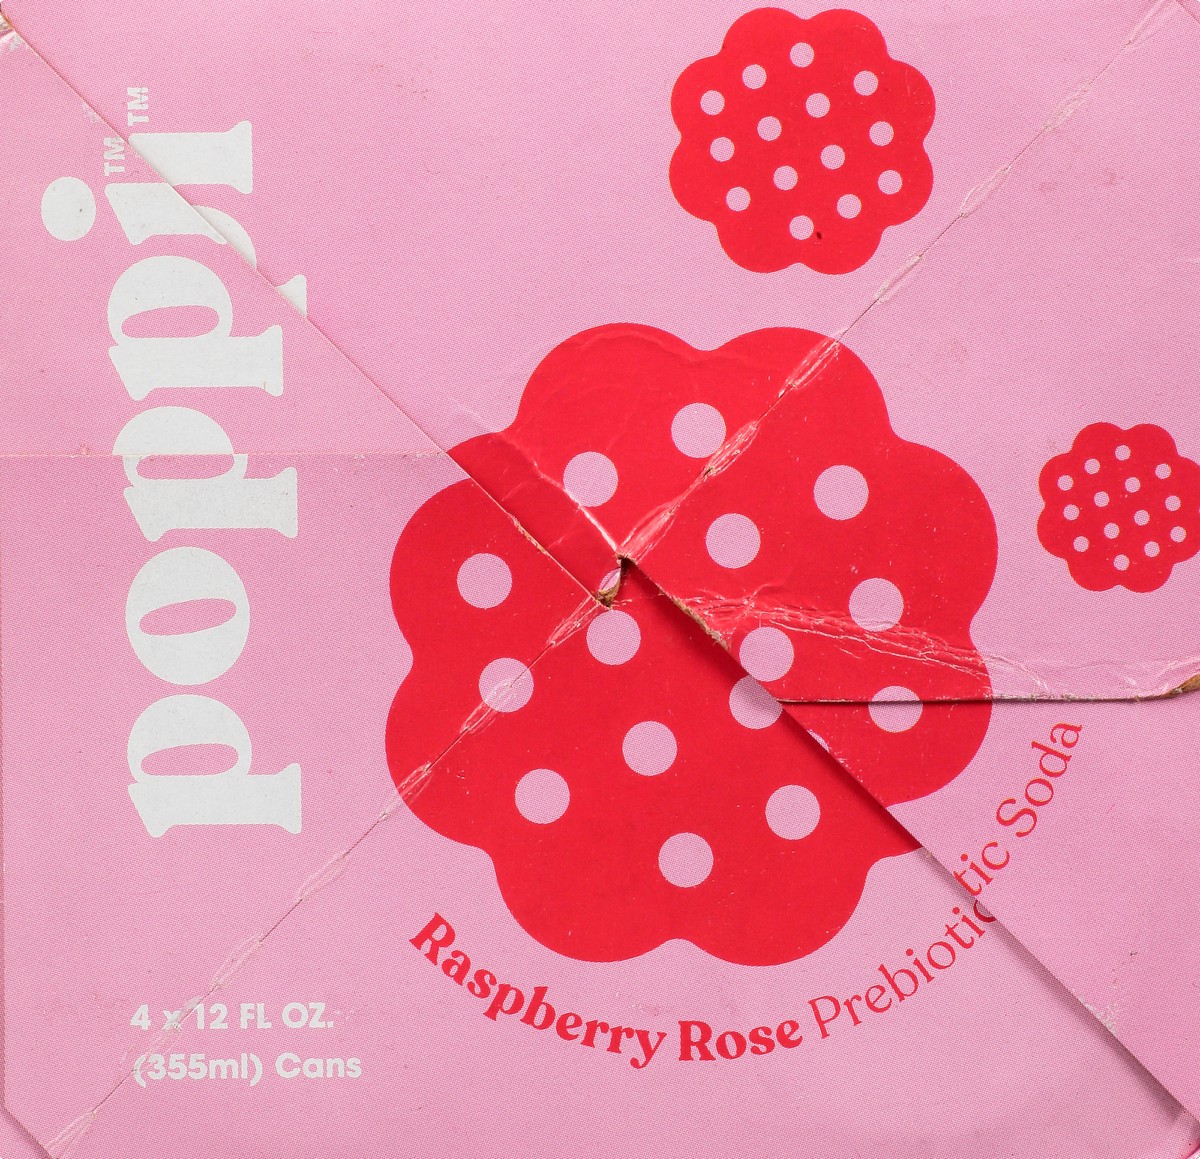 slide 7 of 9, Poppi Prebiotic Soda, Raspberry Rose, 48 fl oz